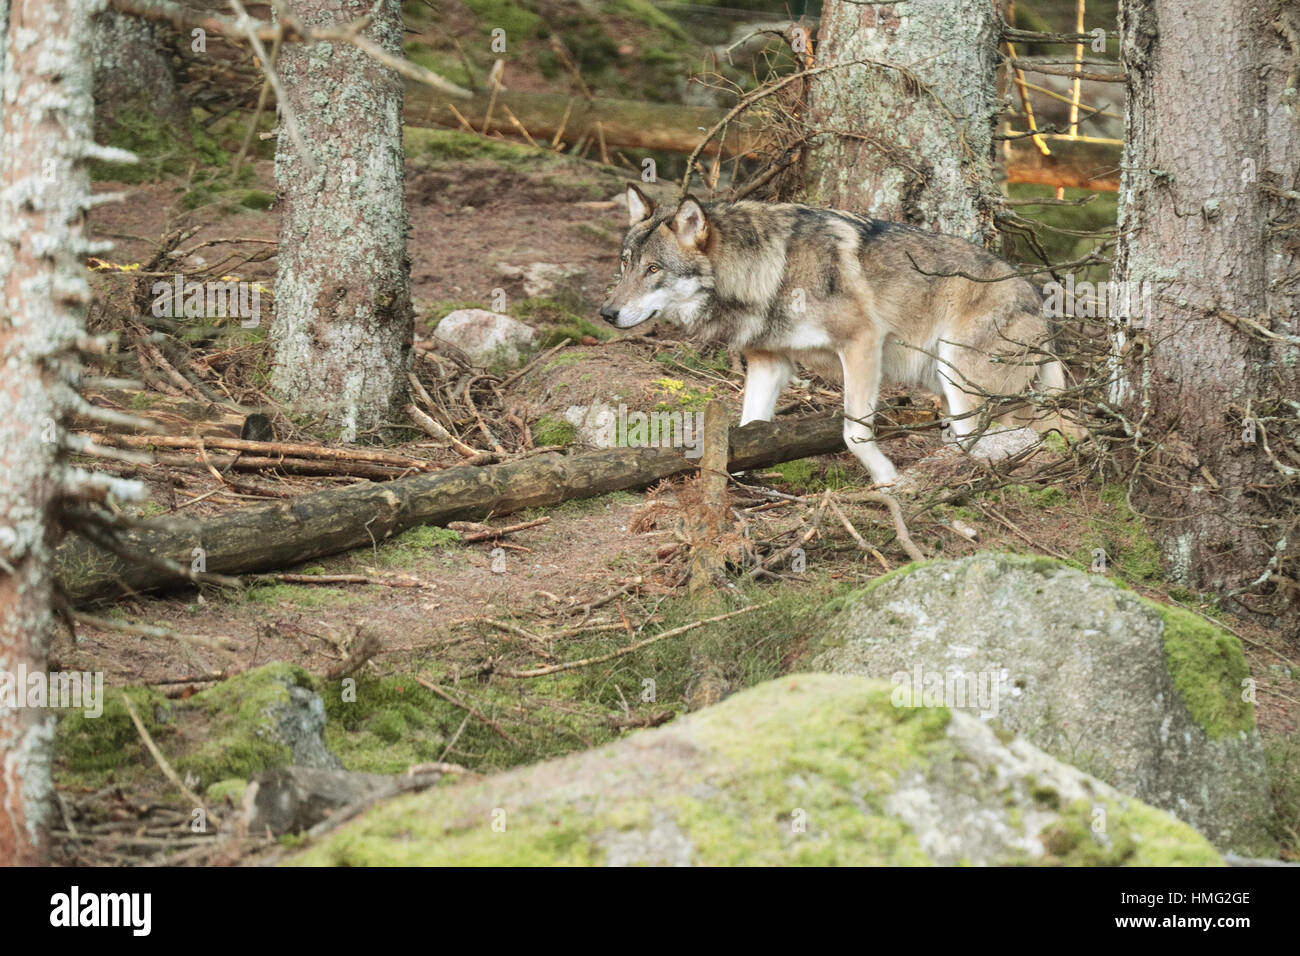 European wolf, Europaeischer Wolf, Canis lupus, wolf, CZECH REPUBLIC. European wolf in the wild in the forests of Sumava Stock Photo